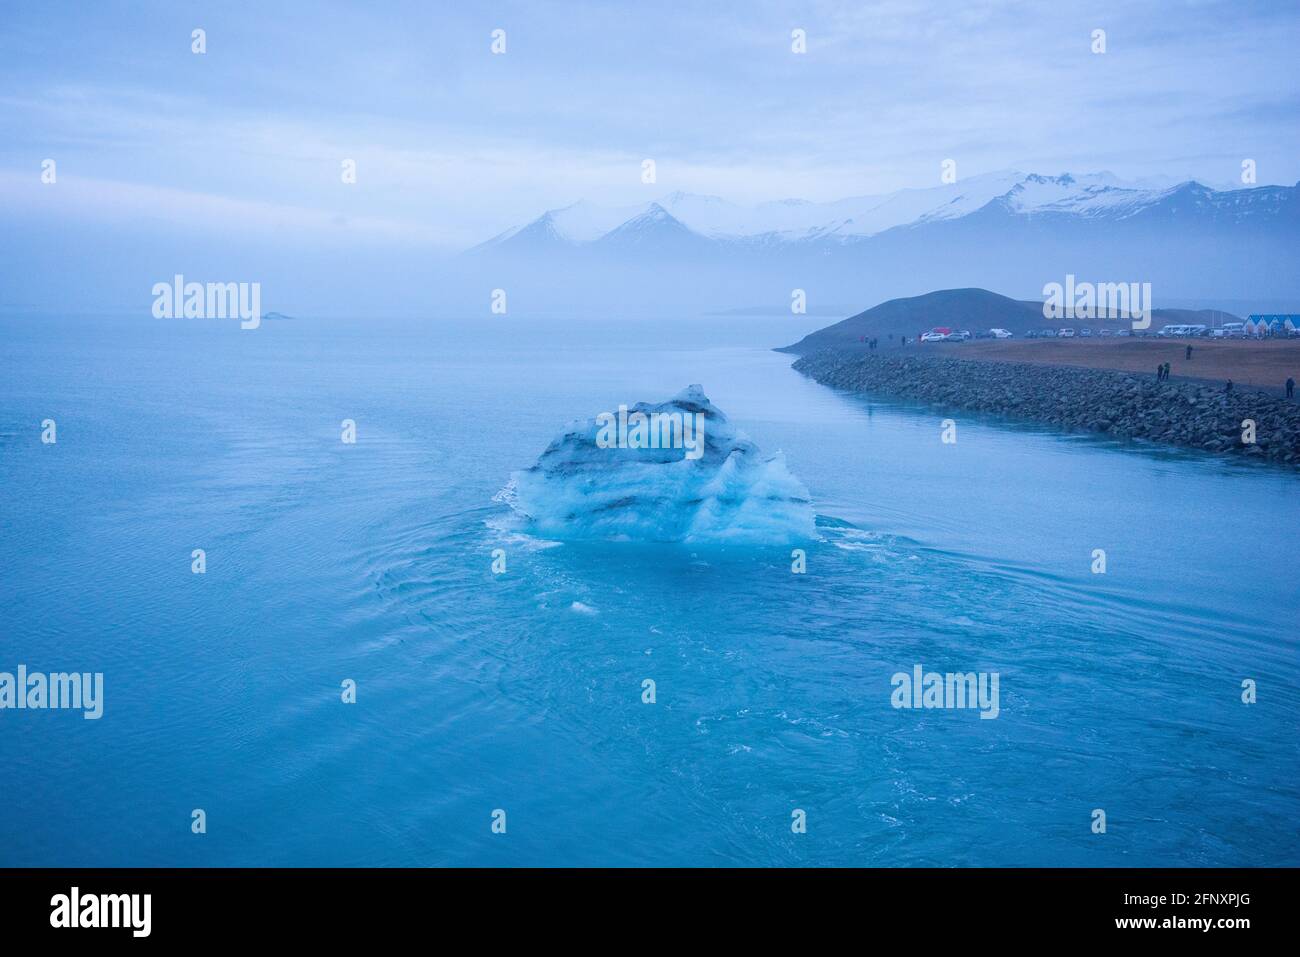 Isländischer Gletscher, der durch die Auswirkungen der globalen Erwärmung schwimmt. Neblige Atmosphäre mit schneebedeckter Bergkette in der Ferne. Eisberg hat Schichten von Vulkanen Stockfoto